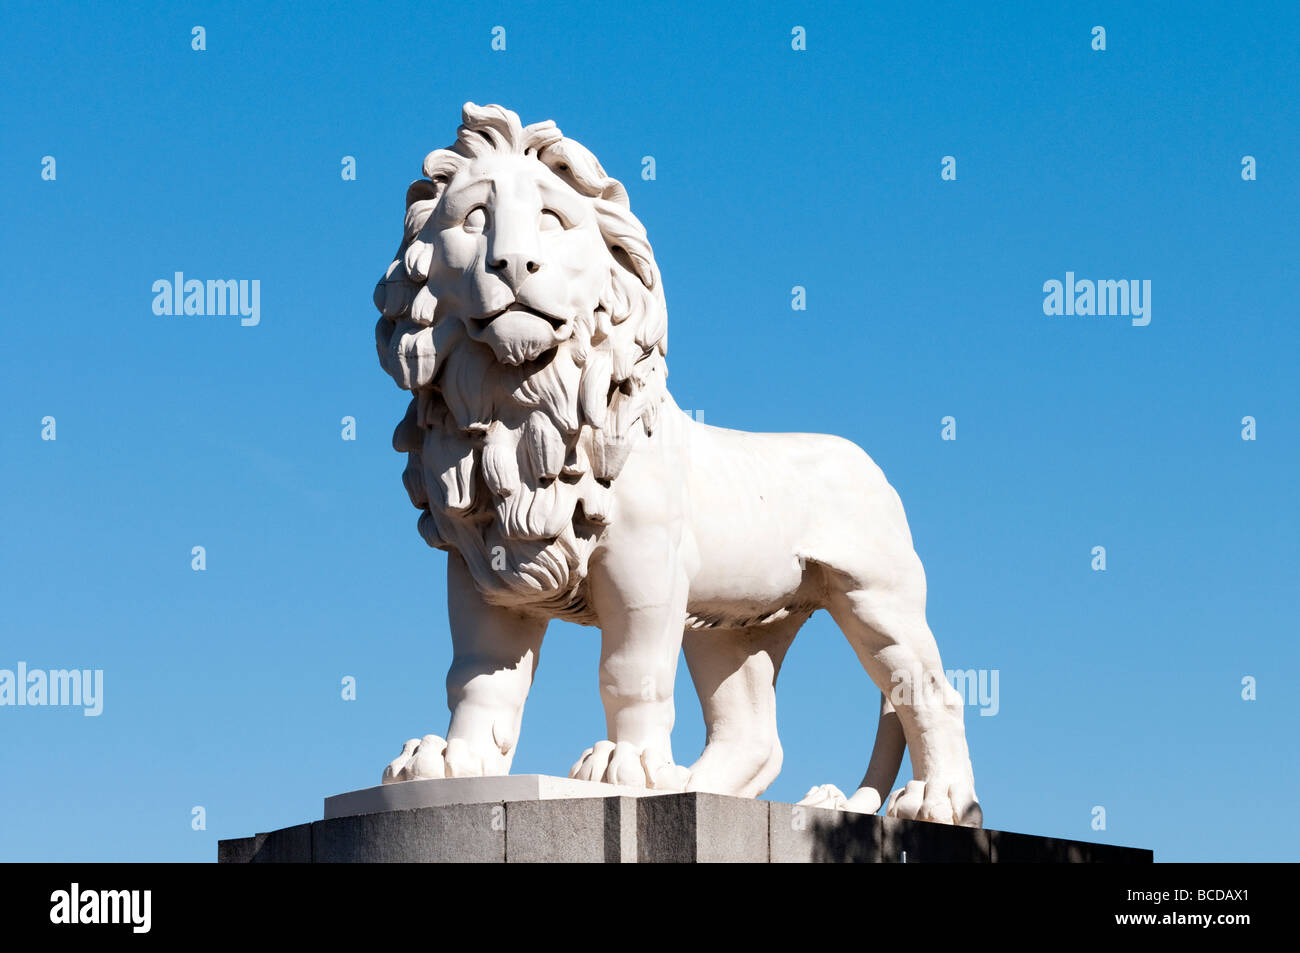 La Banque du Sud Lion sculpture, London England UK Banque D'Images